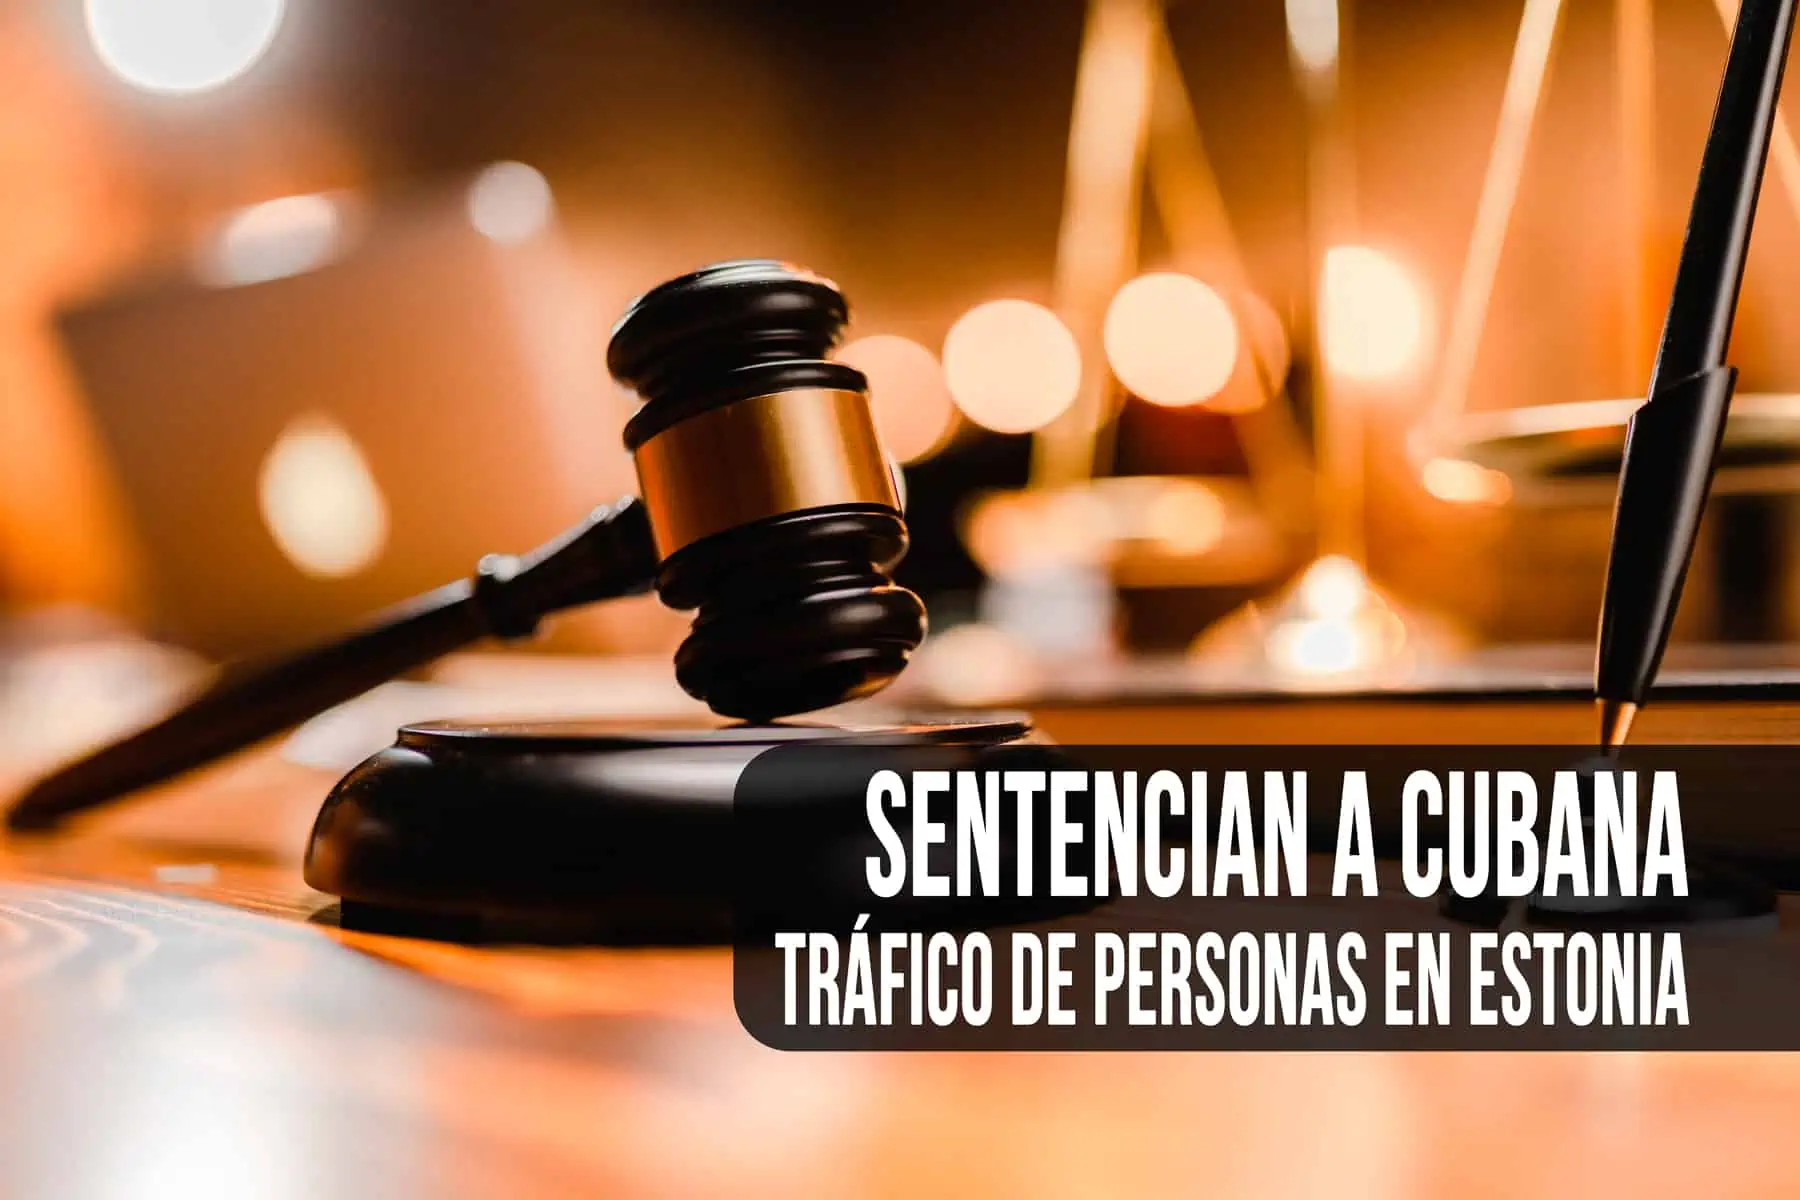 ¡Insólito! Sentencian a una Cubana por Tráfico de Personas en Estonia